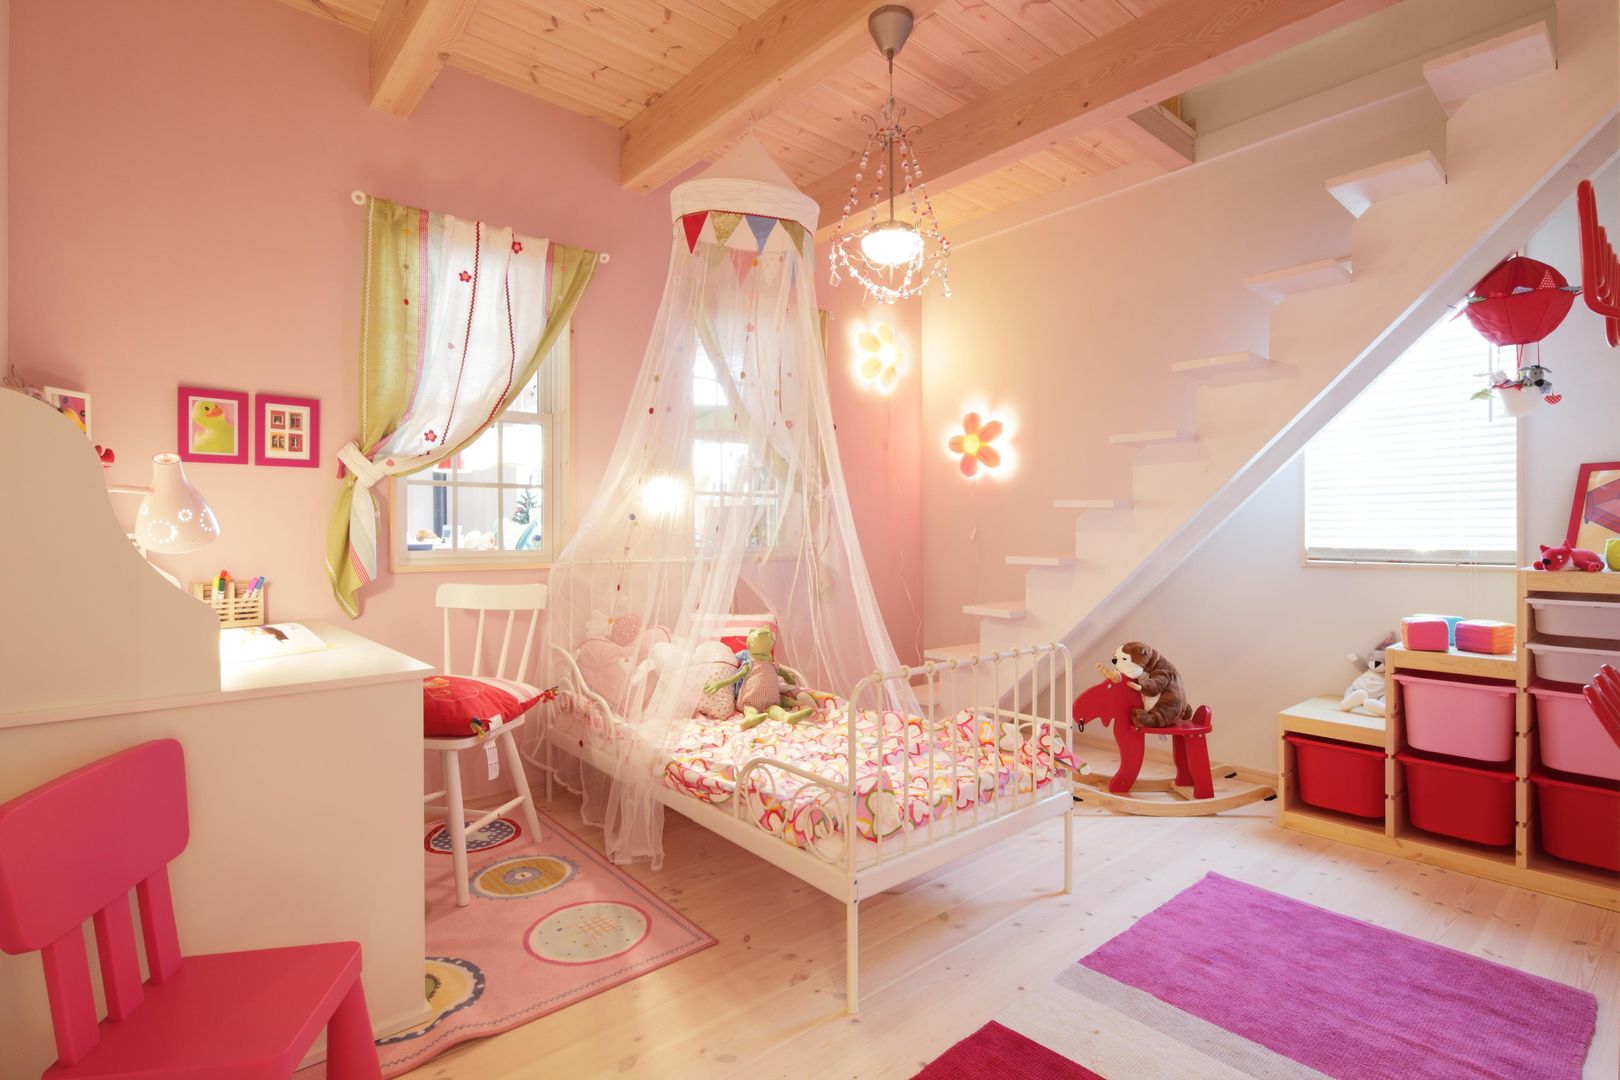 D`s HOUSE, dwarf dwarf Skandinavische Kinderzimmer